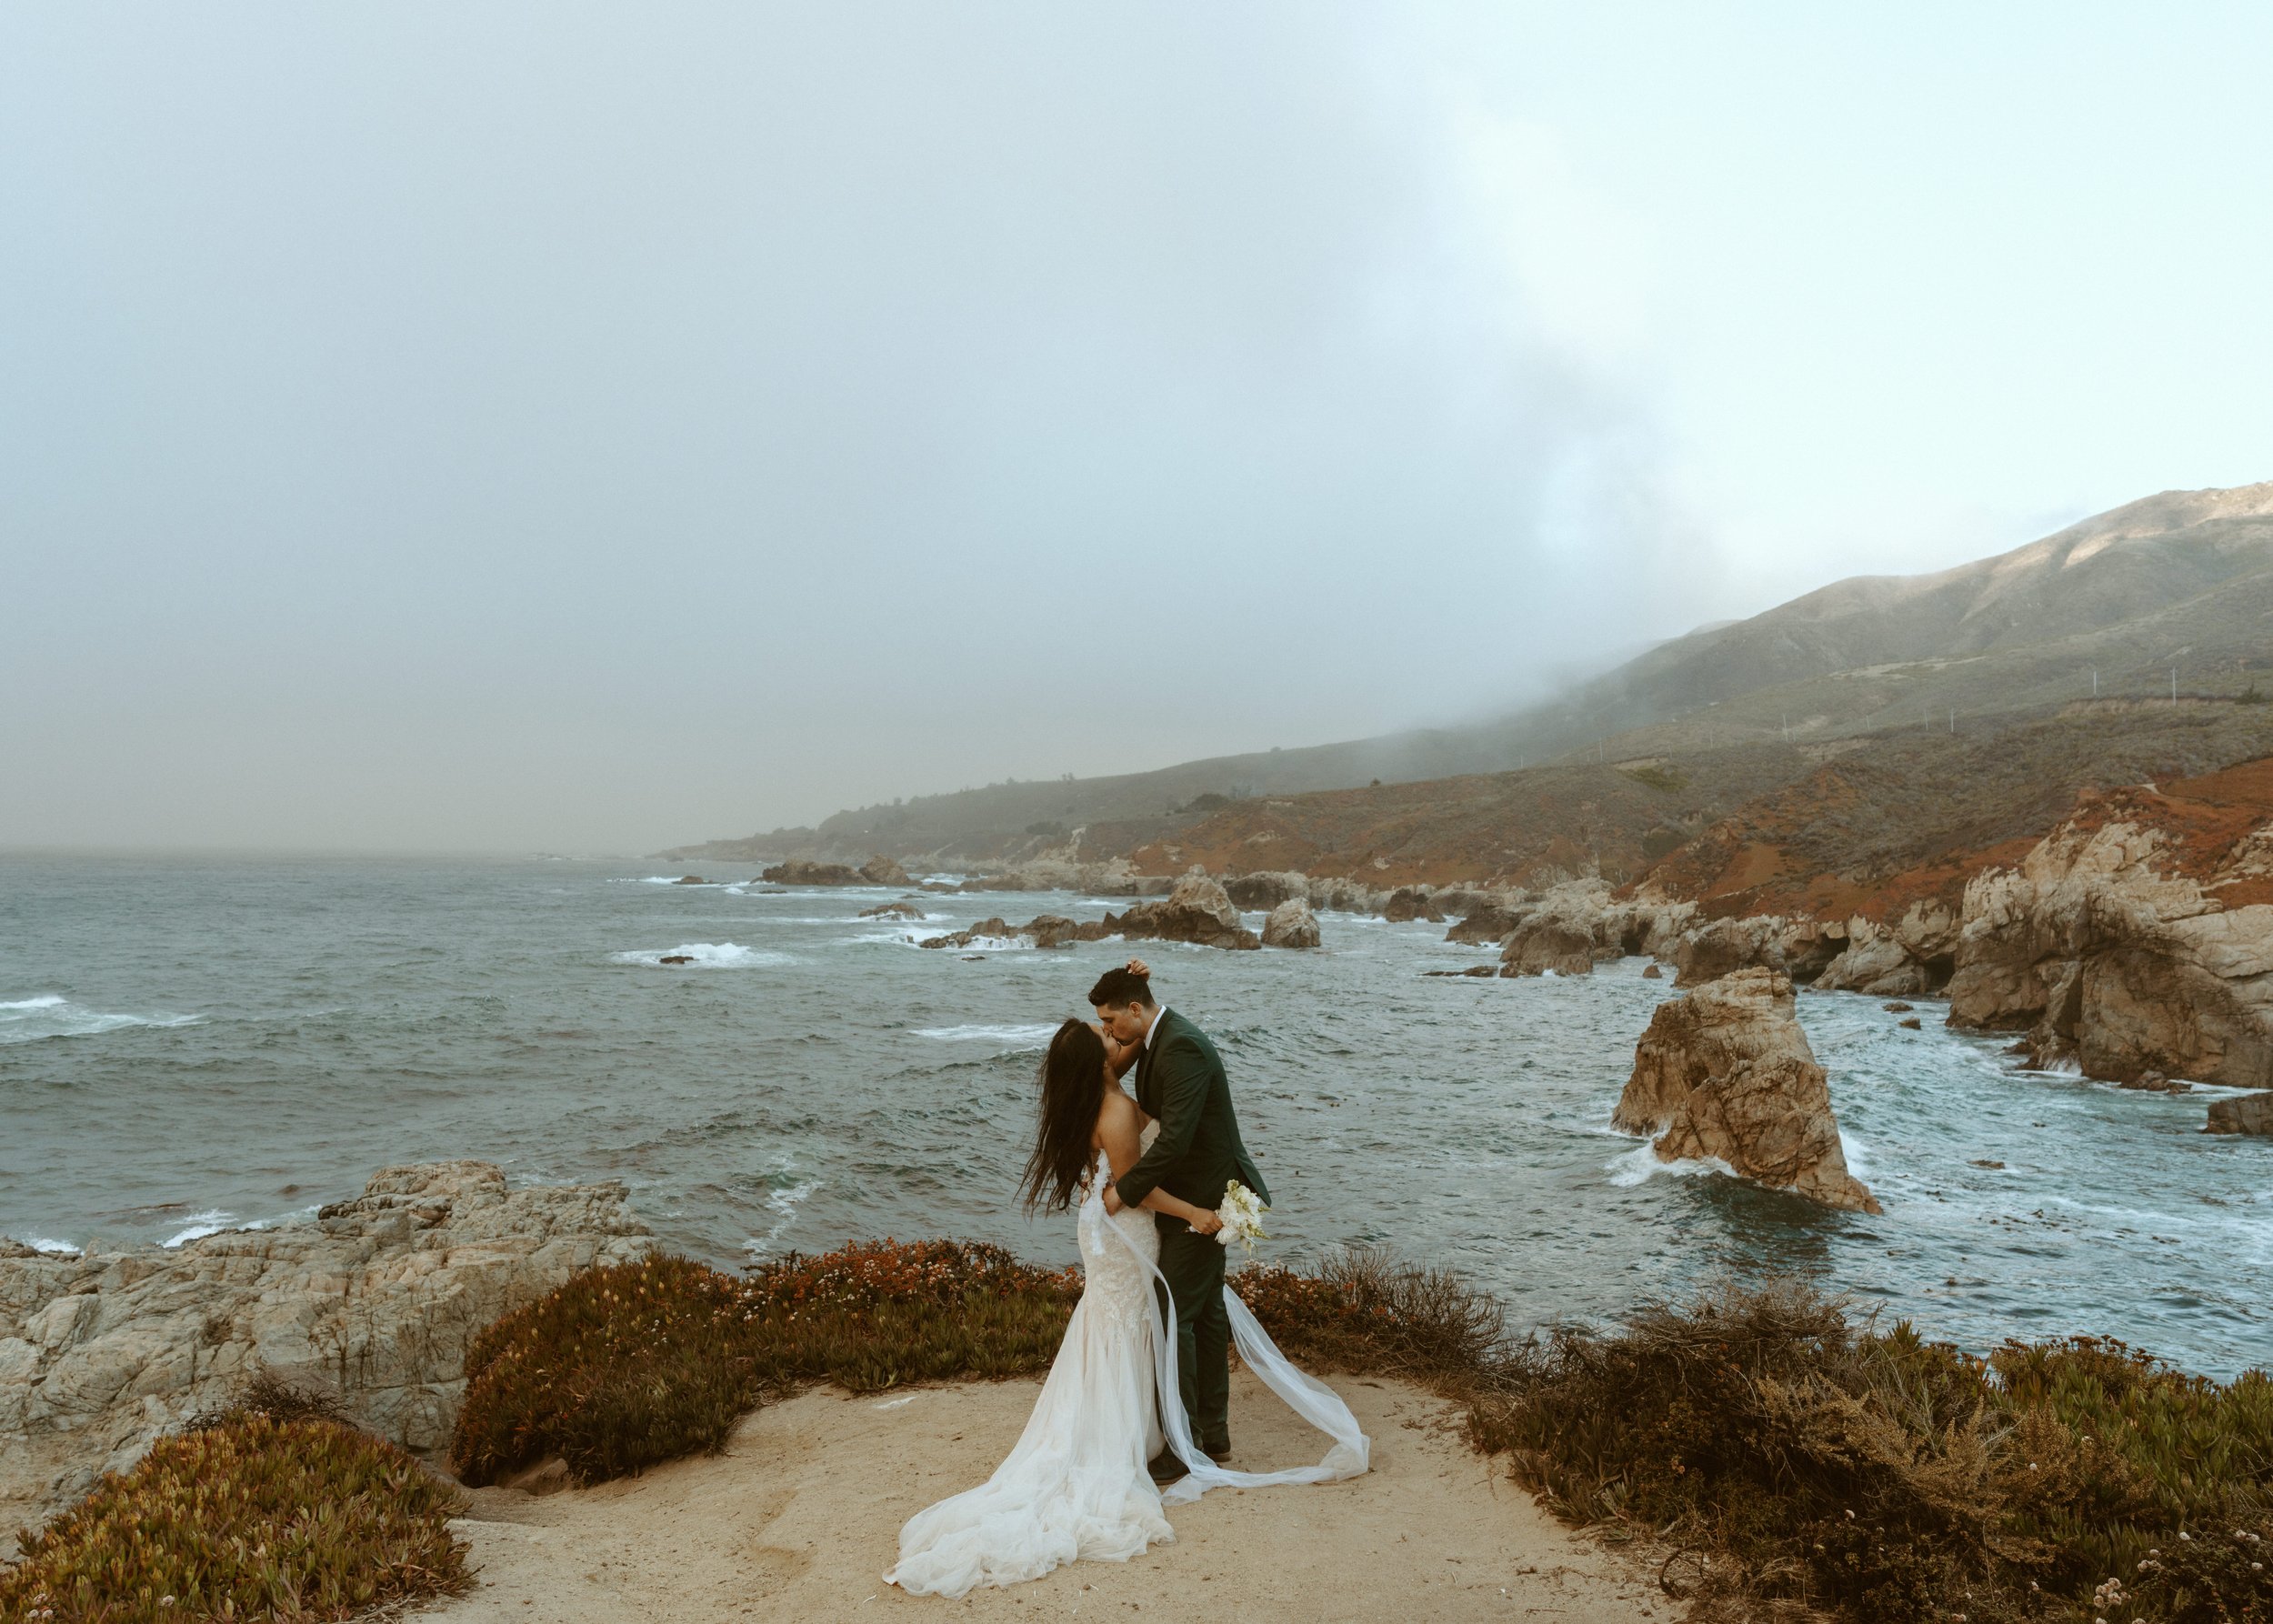 Glen Oaks Elopement Wedding | Coastal Cliffs Wedding Photos | Big Sur Elopement Photographer | Destination Elopement 